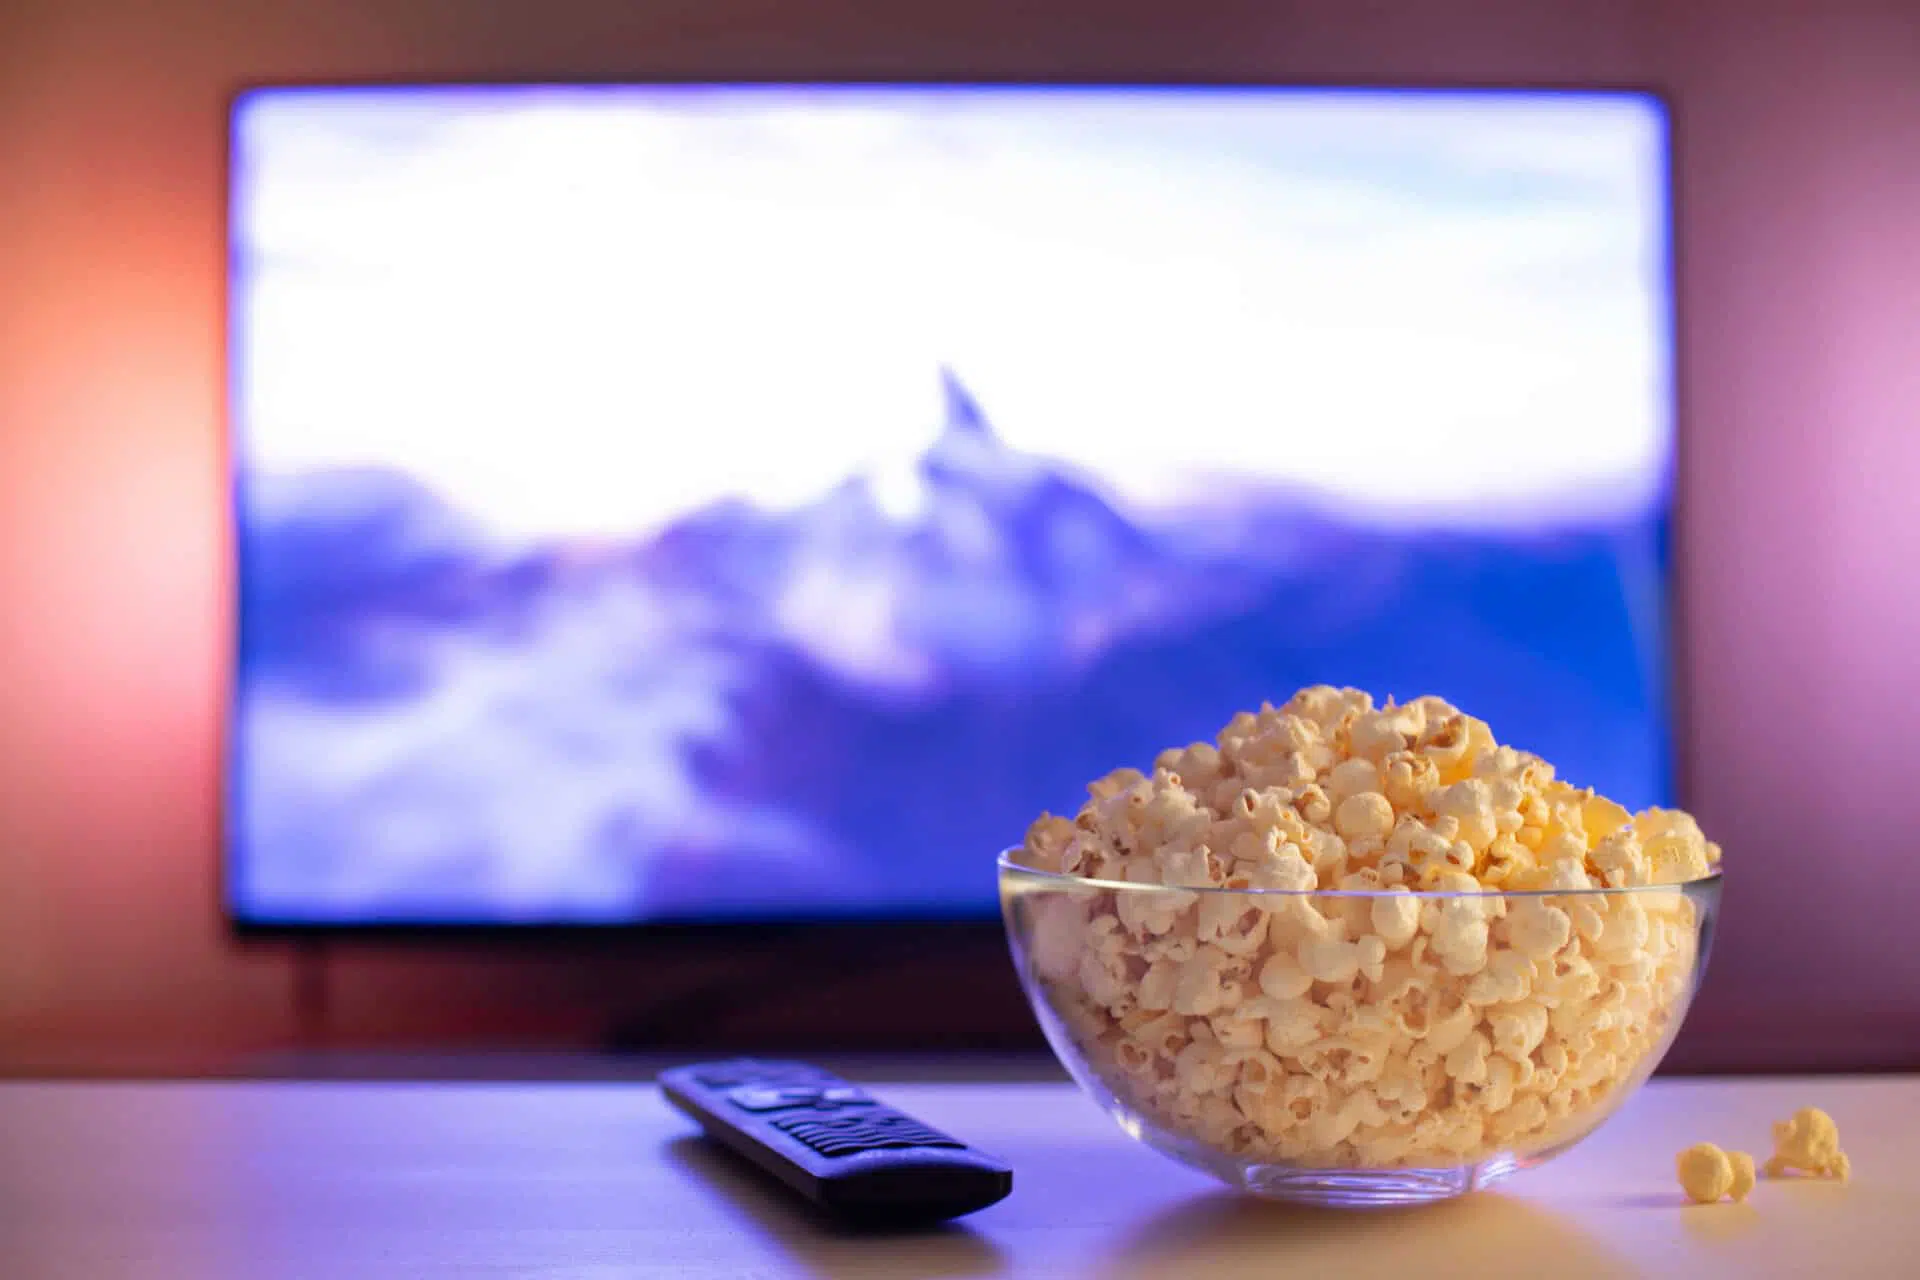 Bol de pop-corn disposé sur une table à côté d'une manette de télévision. En arrière-plan, on voit un écran de télévision qui diffuse un film.